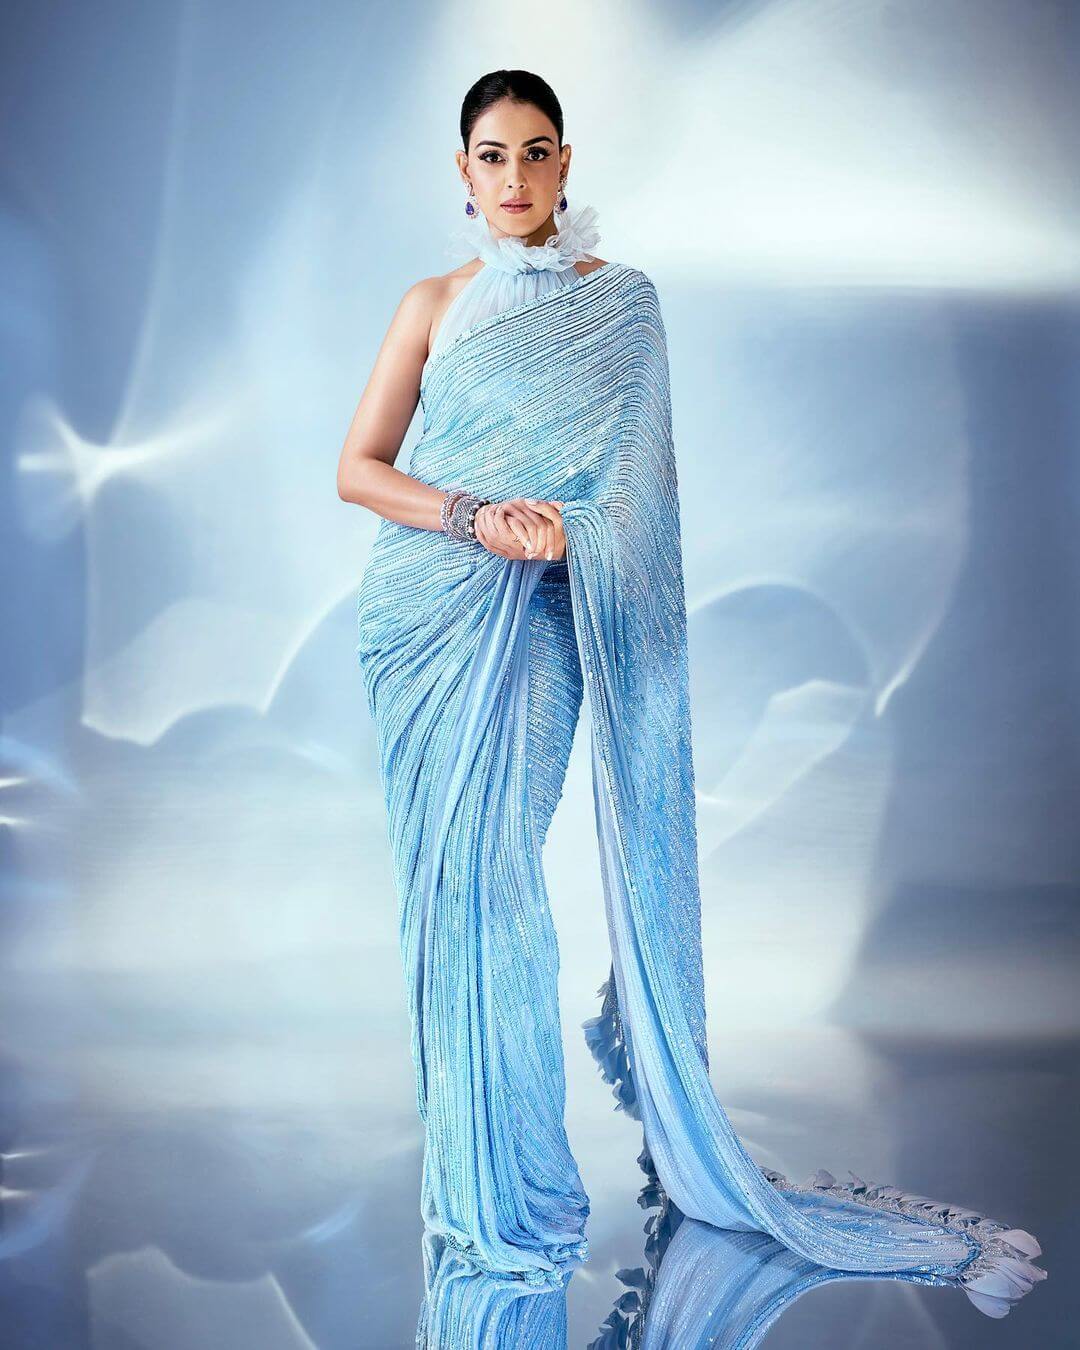 Genelia Deshmukh's Alluring Ice-Blue Saree Look